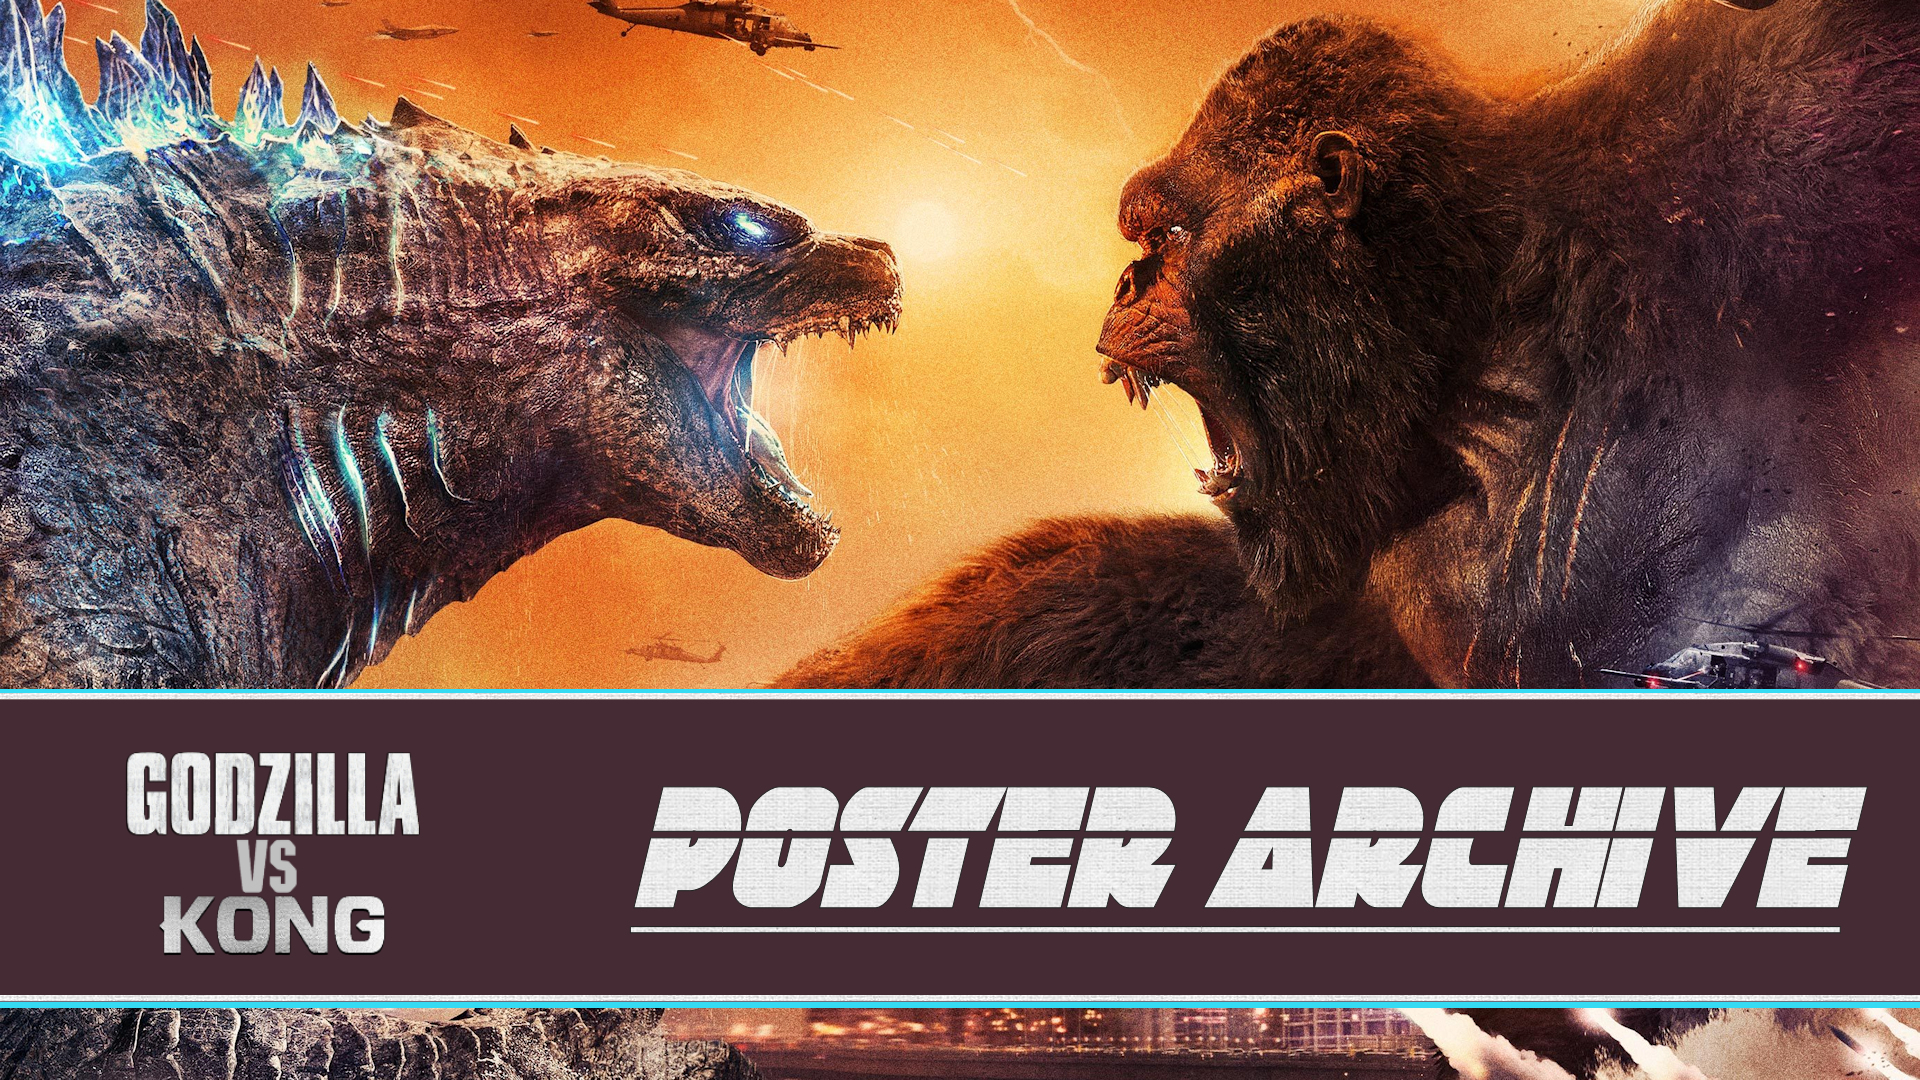 Kong Vs Godzilla Poster Wallpapers